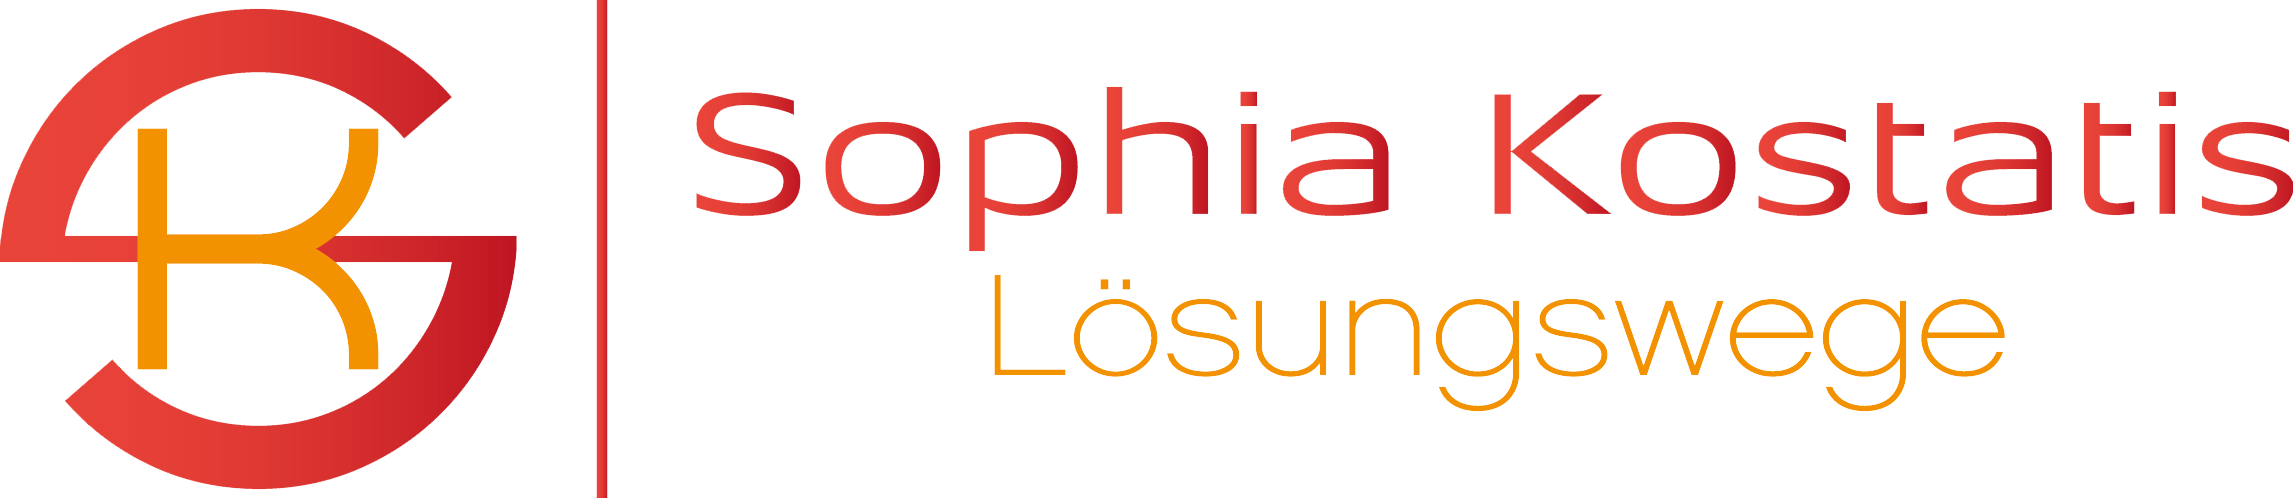 Sophia Kostatis Lösungswege